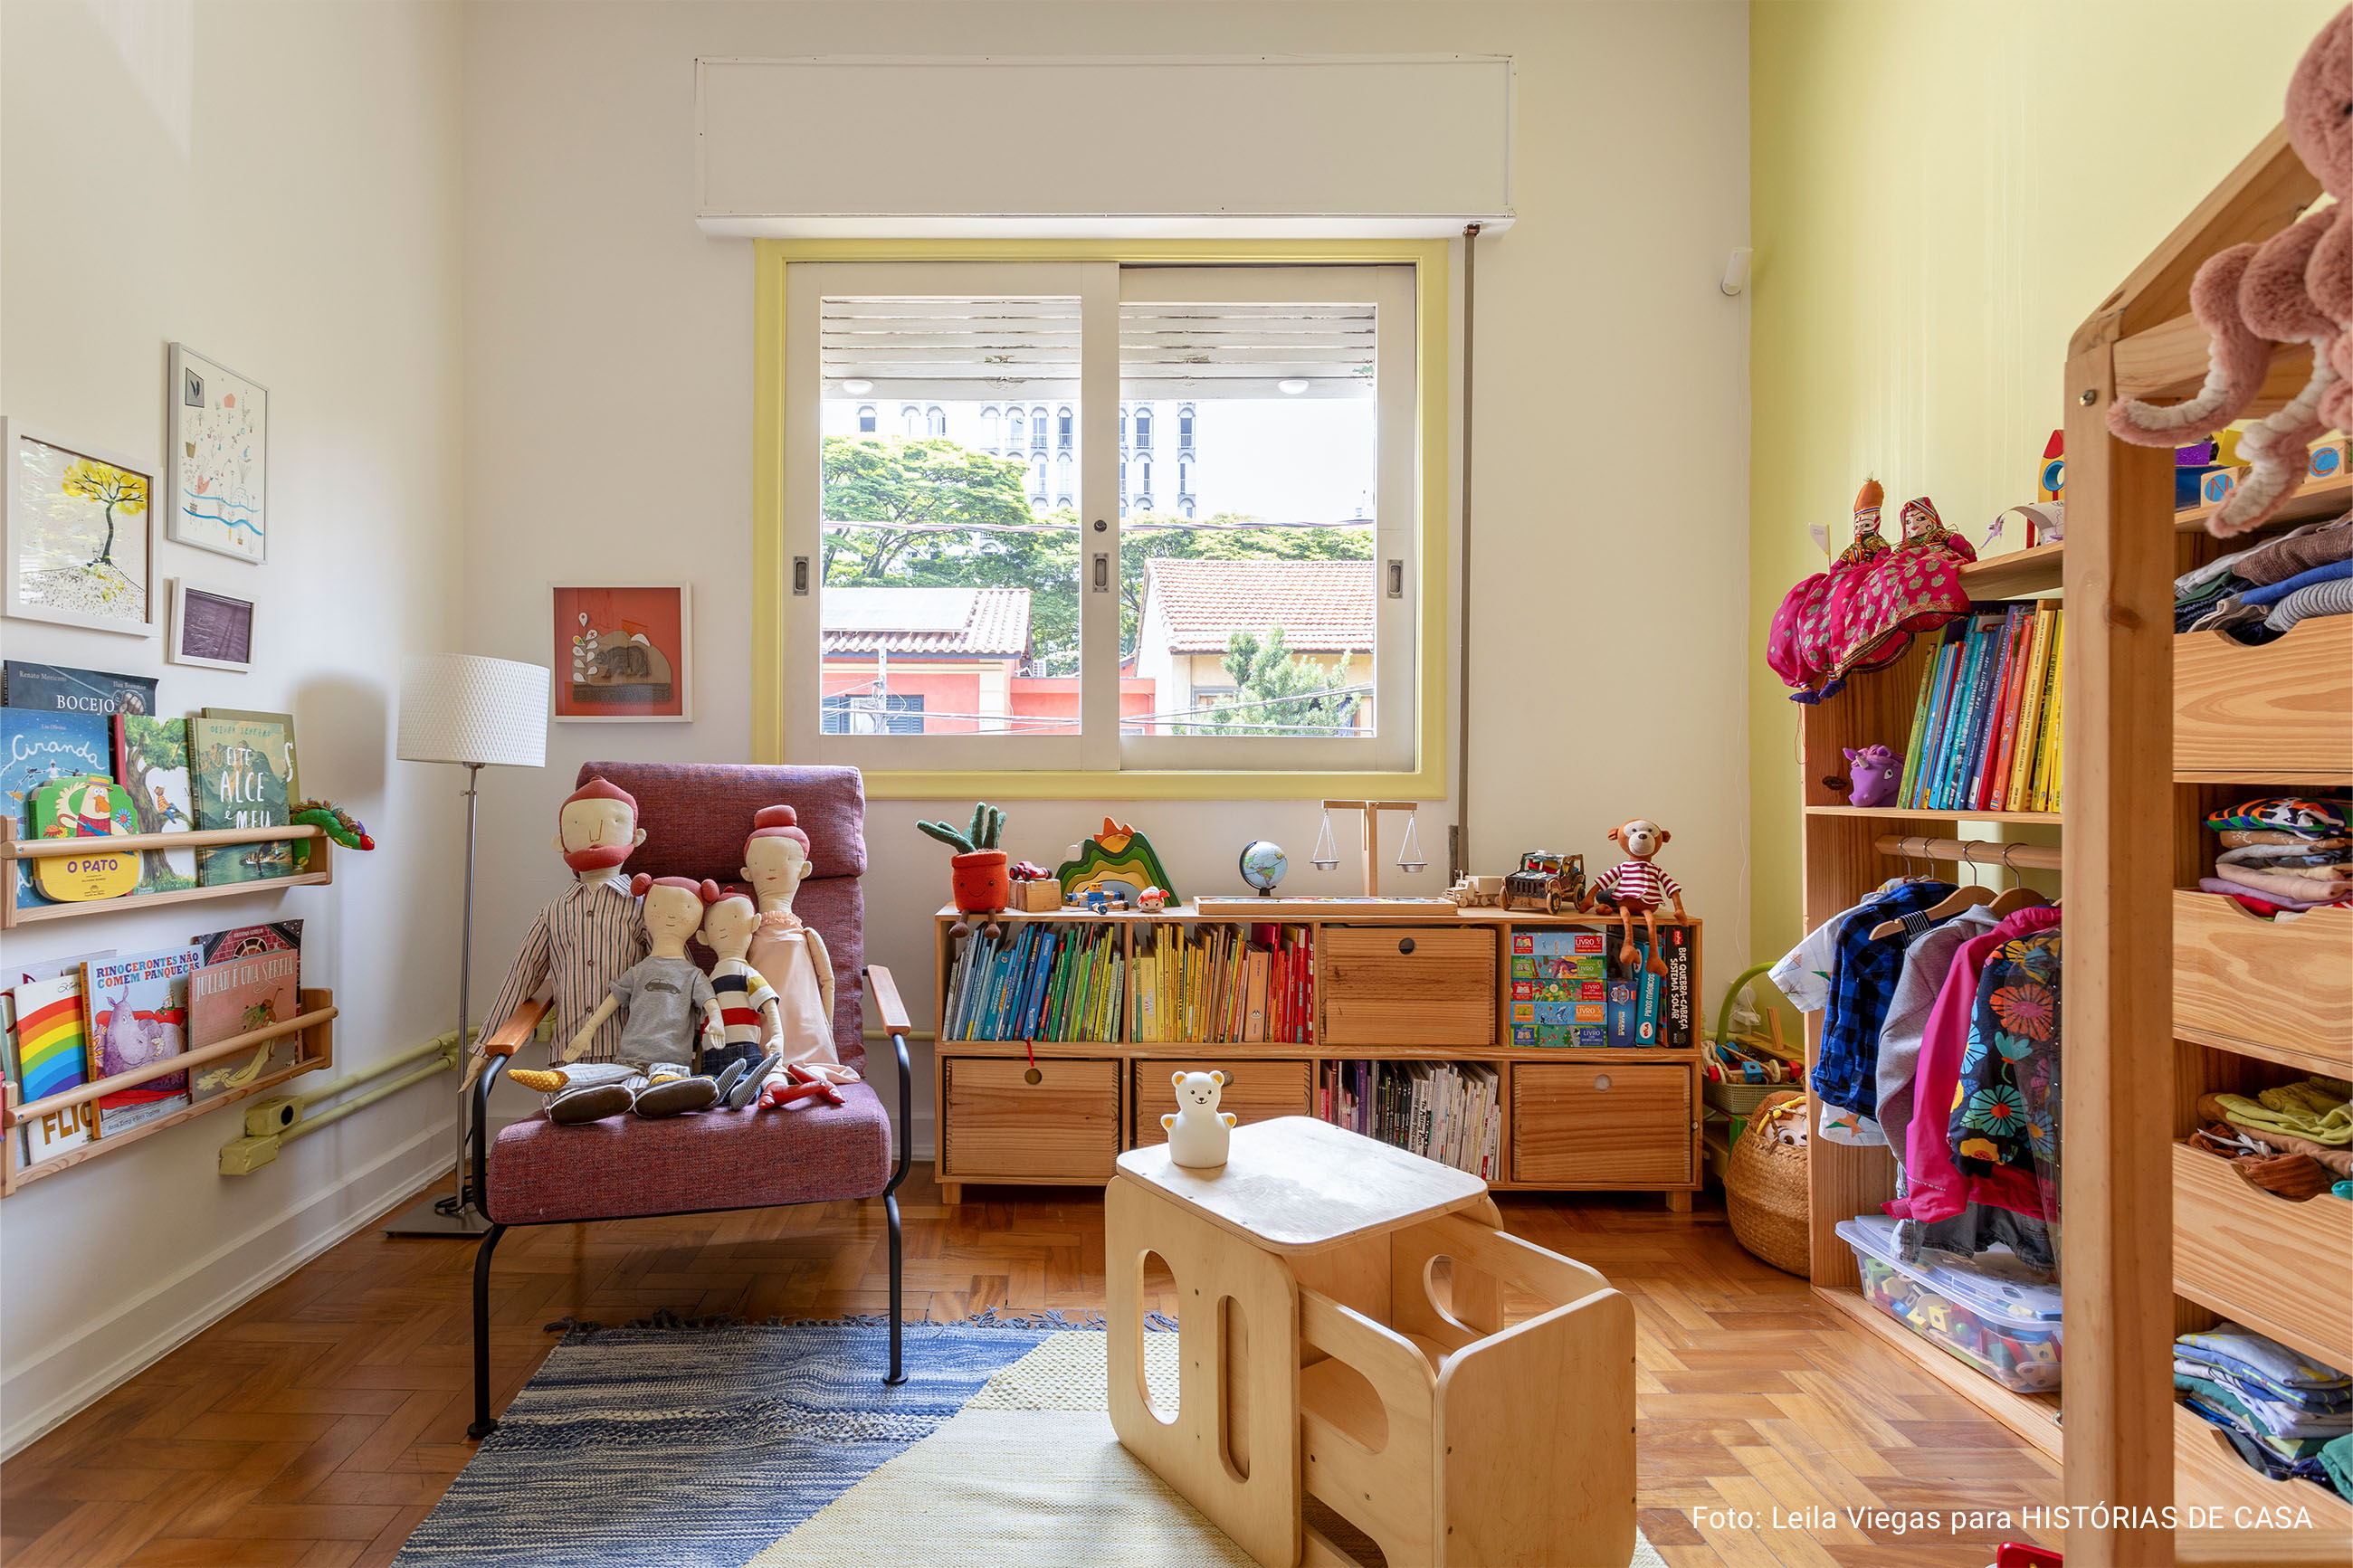 Decoração de casa com quintal, estantes de livros e quarto de criança.